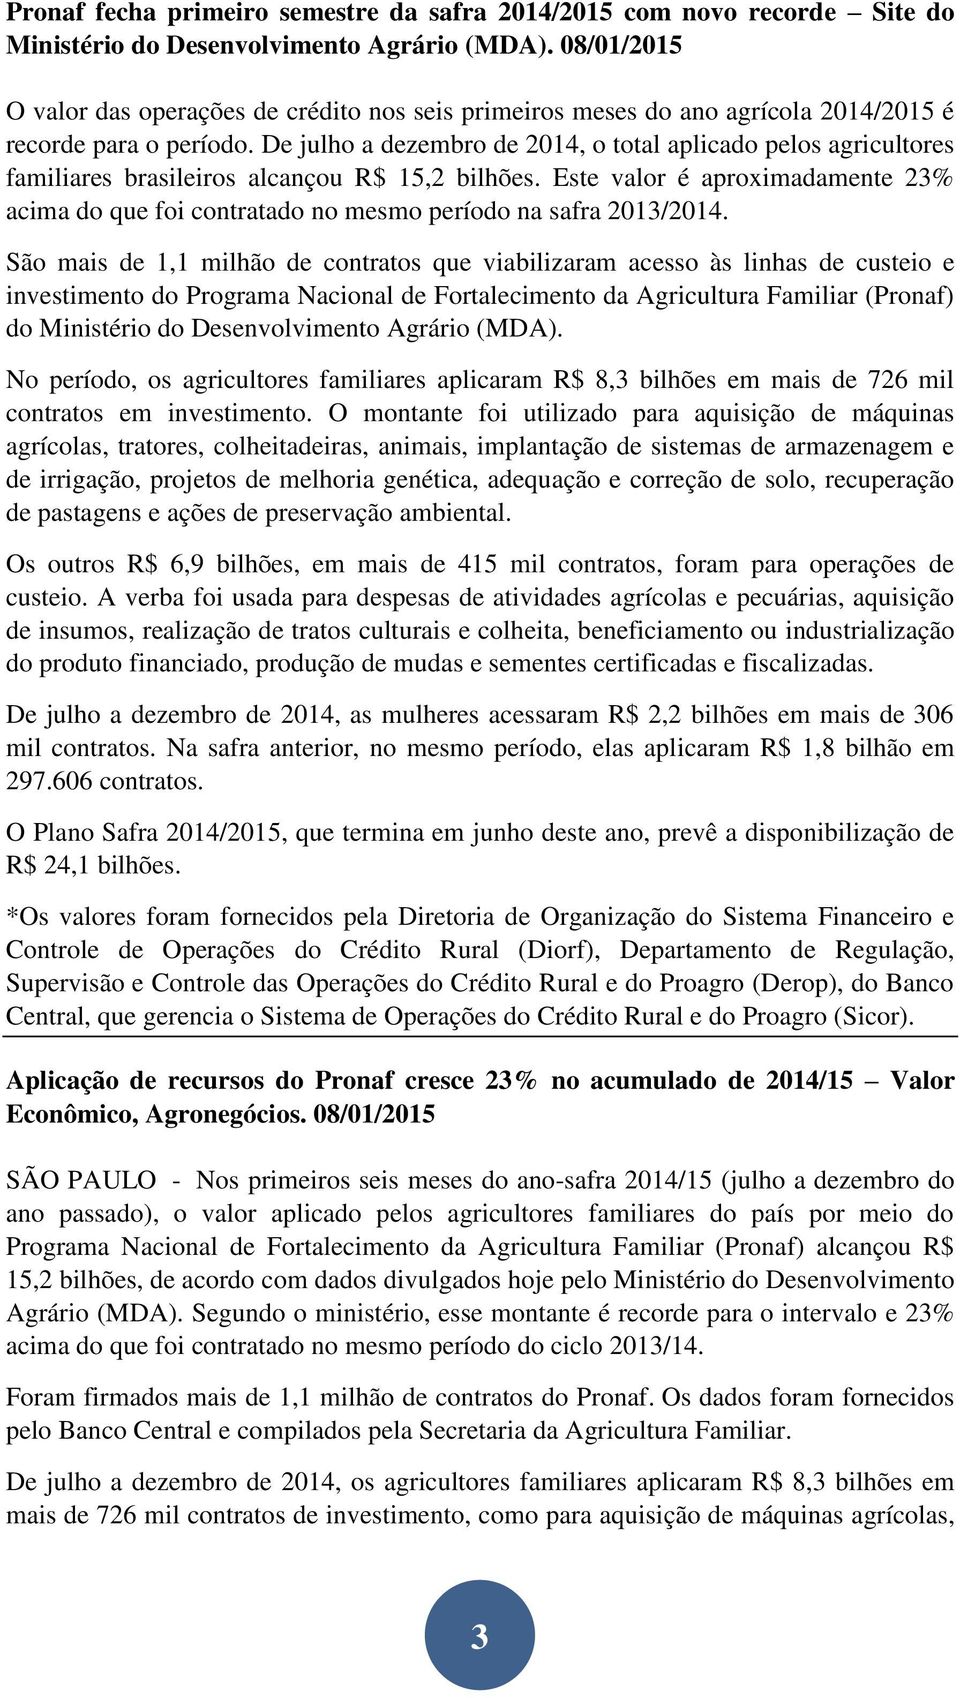 De julho a dezembro de 2014, o total aplicado pelos agricultores familiares brasileiros alcançou R$ 15,2 bilhões.